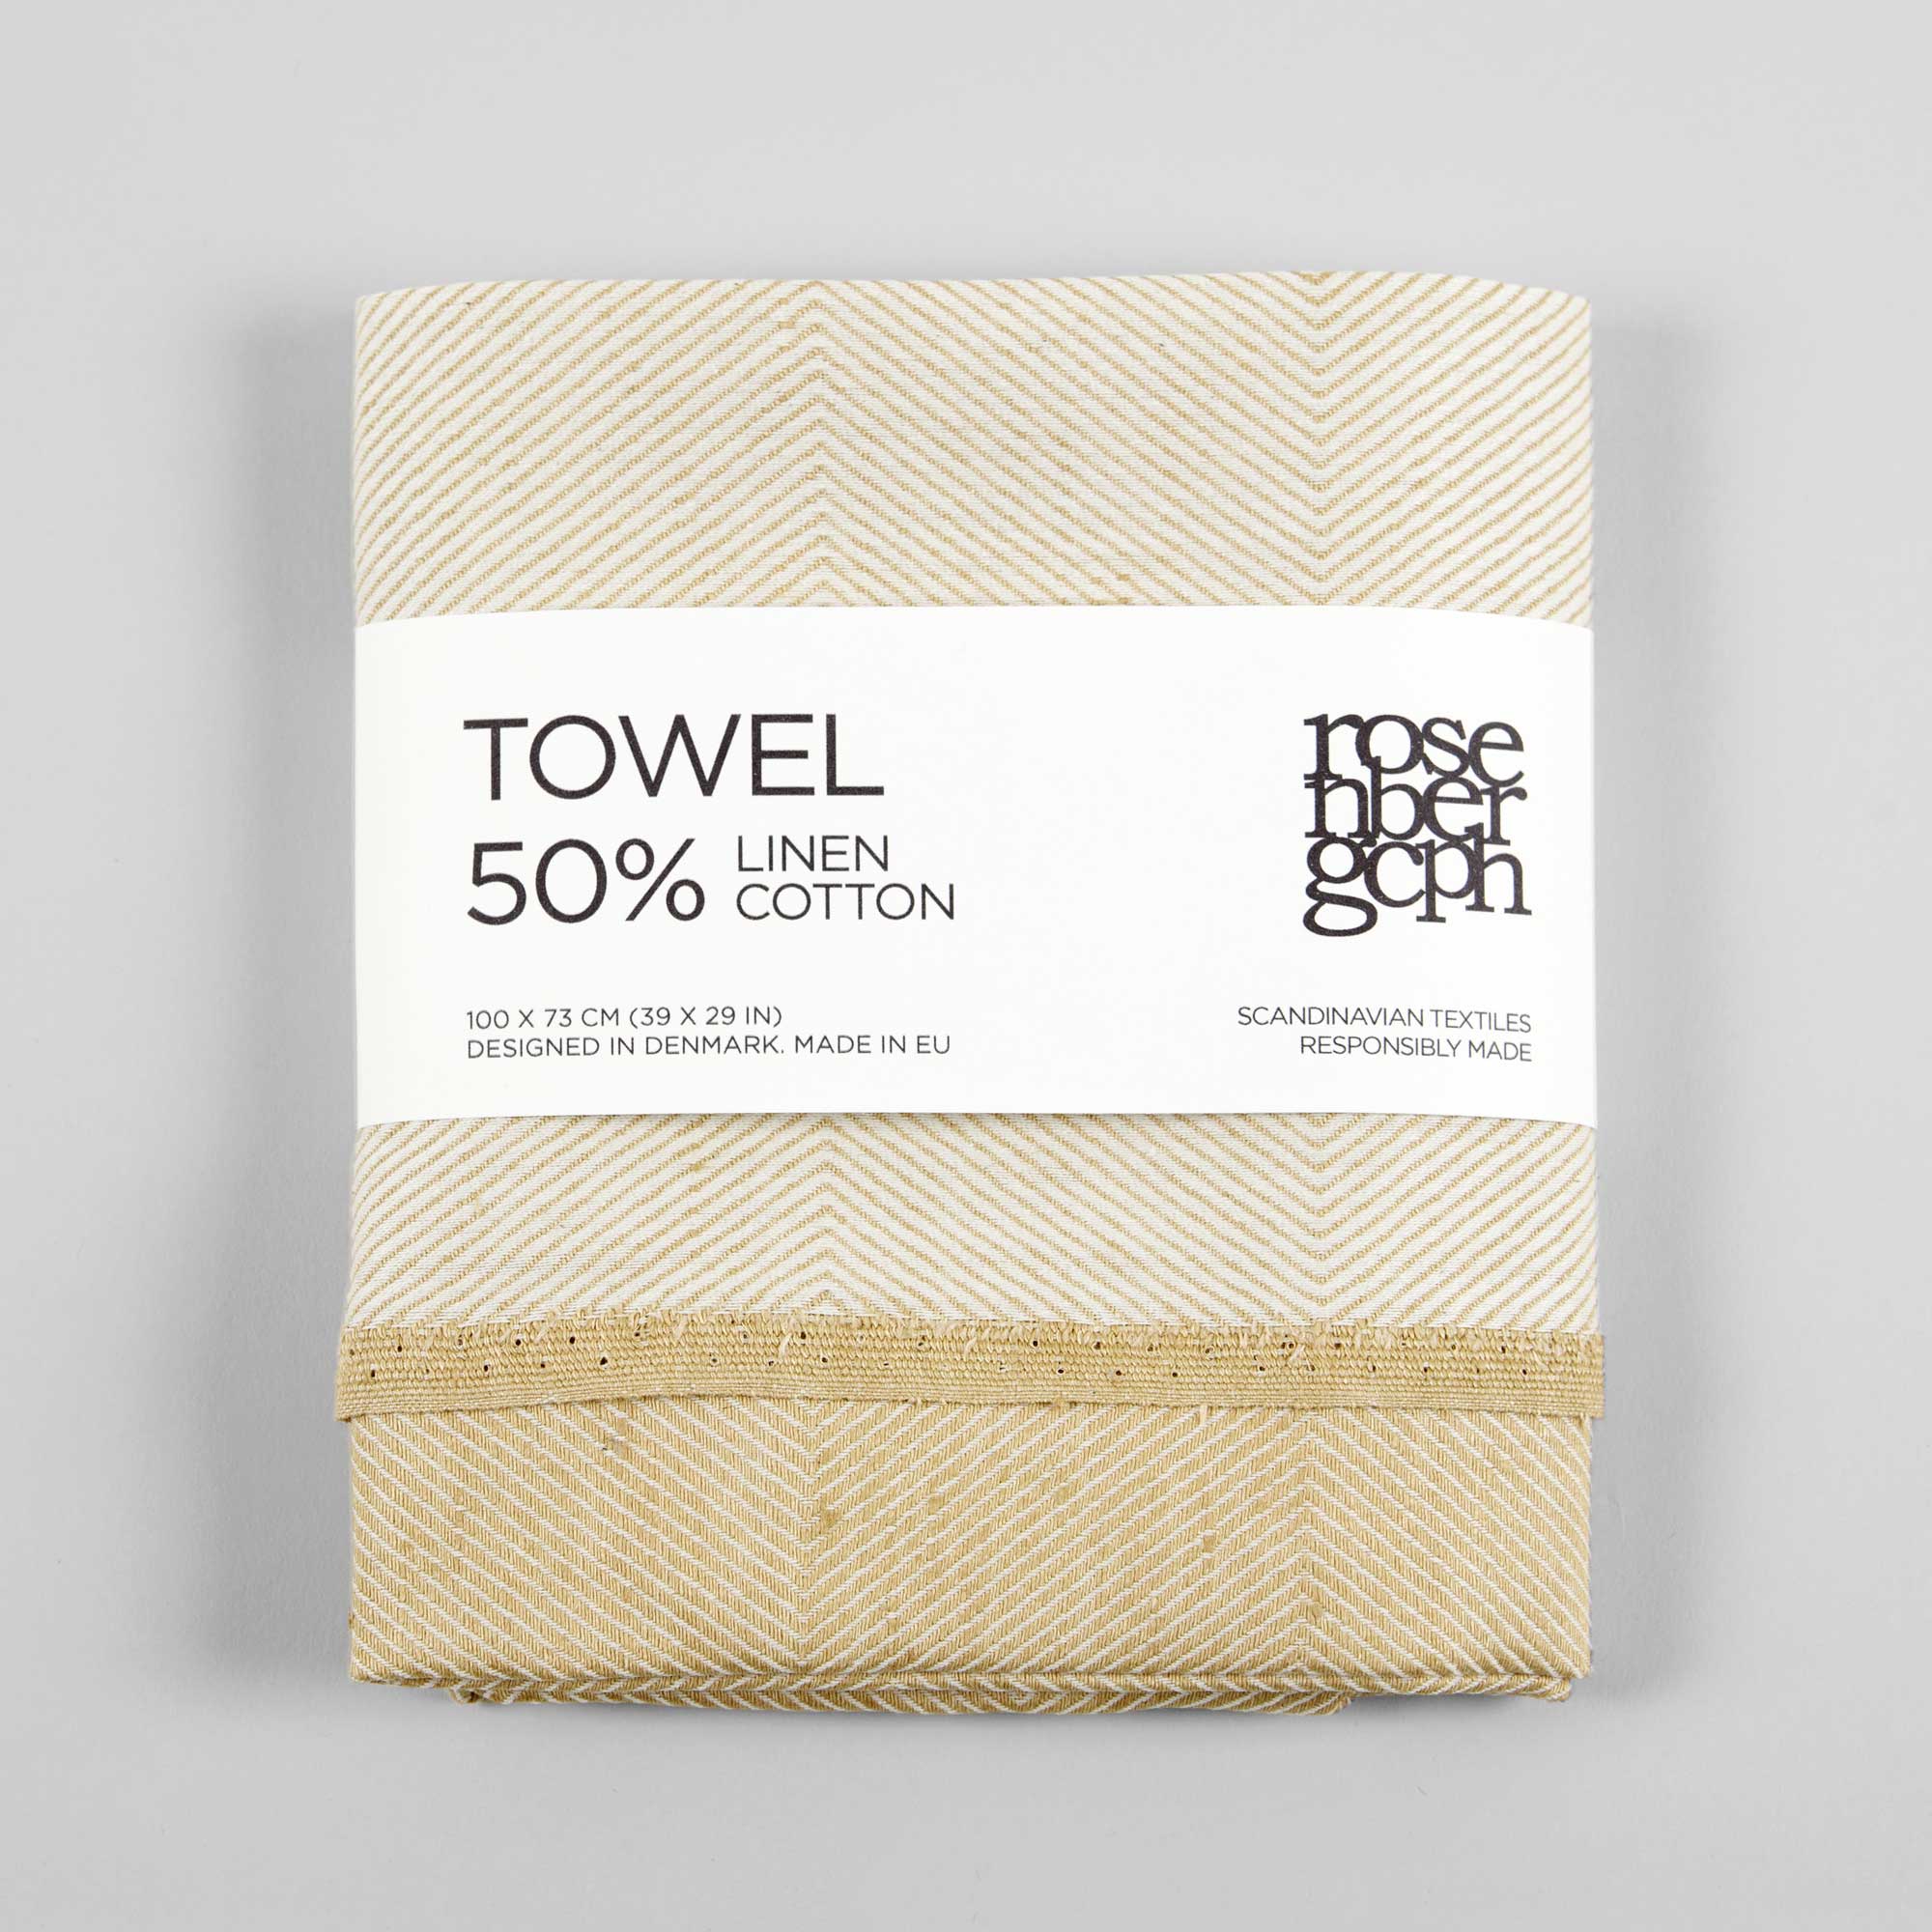 Håndklæde, høgul, hør/bomuld, design af Anne Rosenberg, RosenbergCph